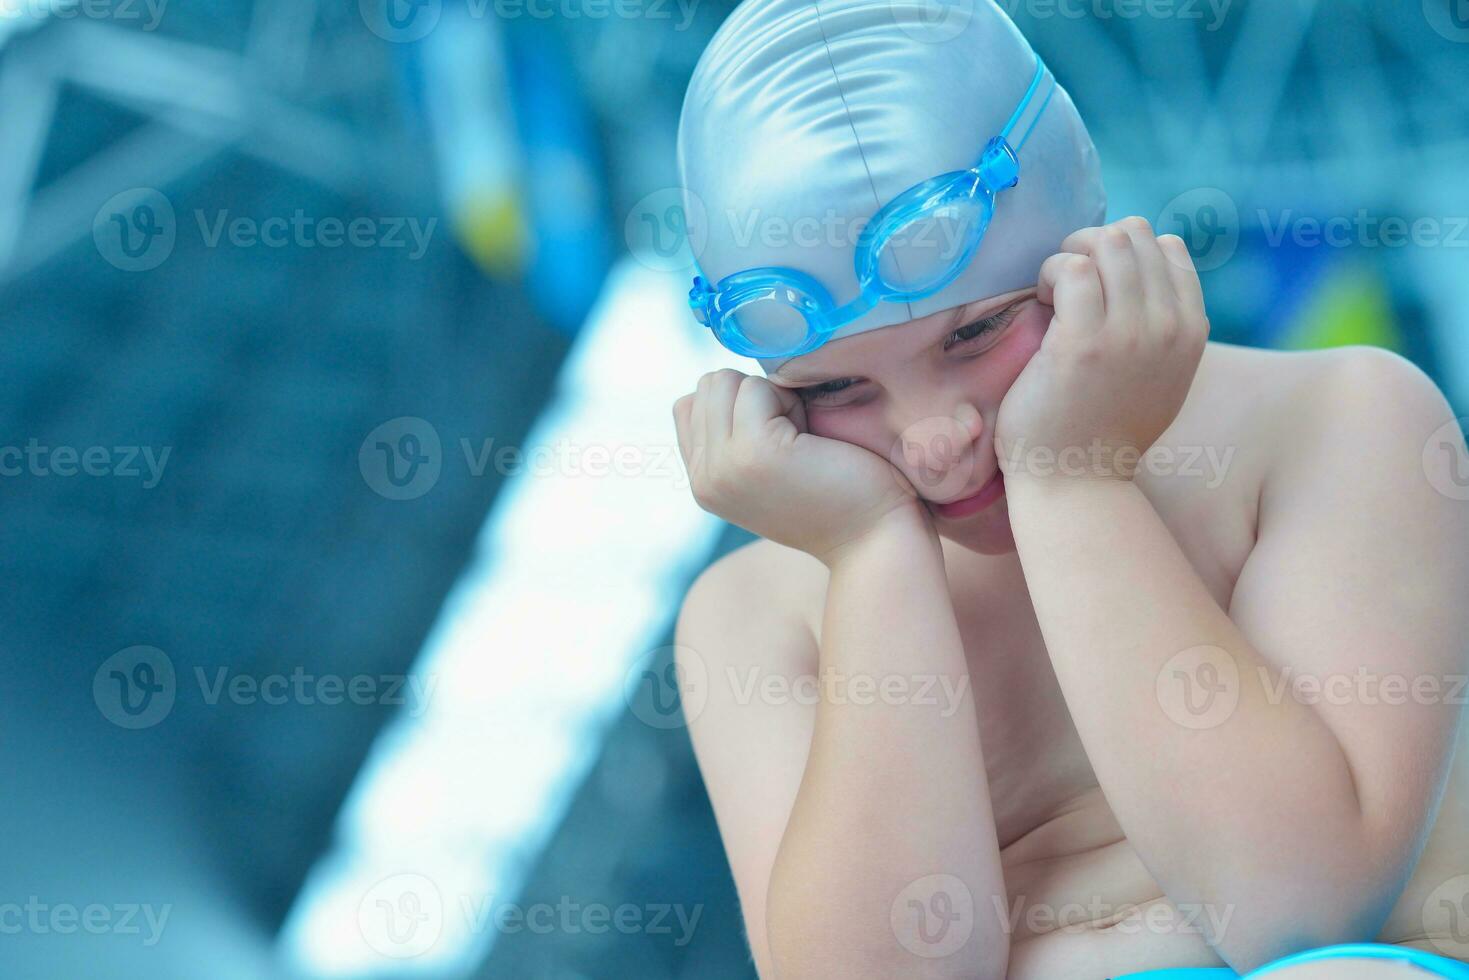 kinderportret op zwembad foto